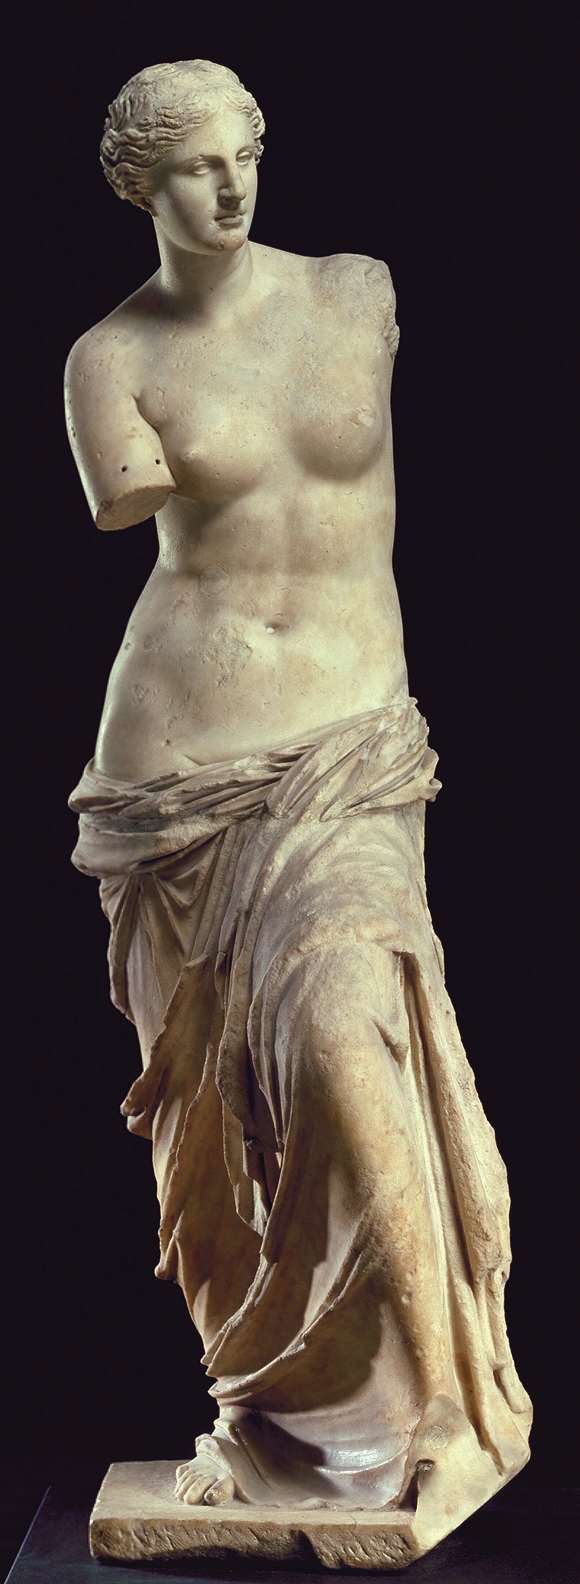 Afrodite - Venus de Milo